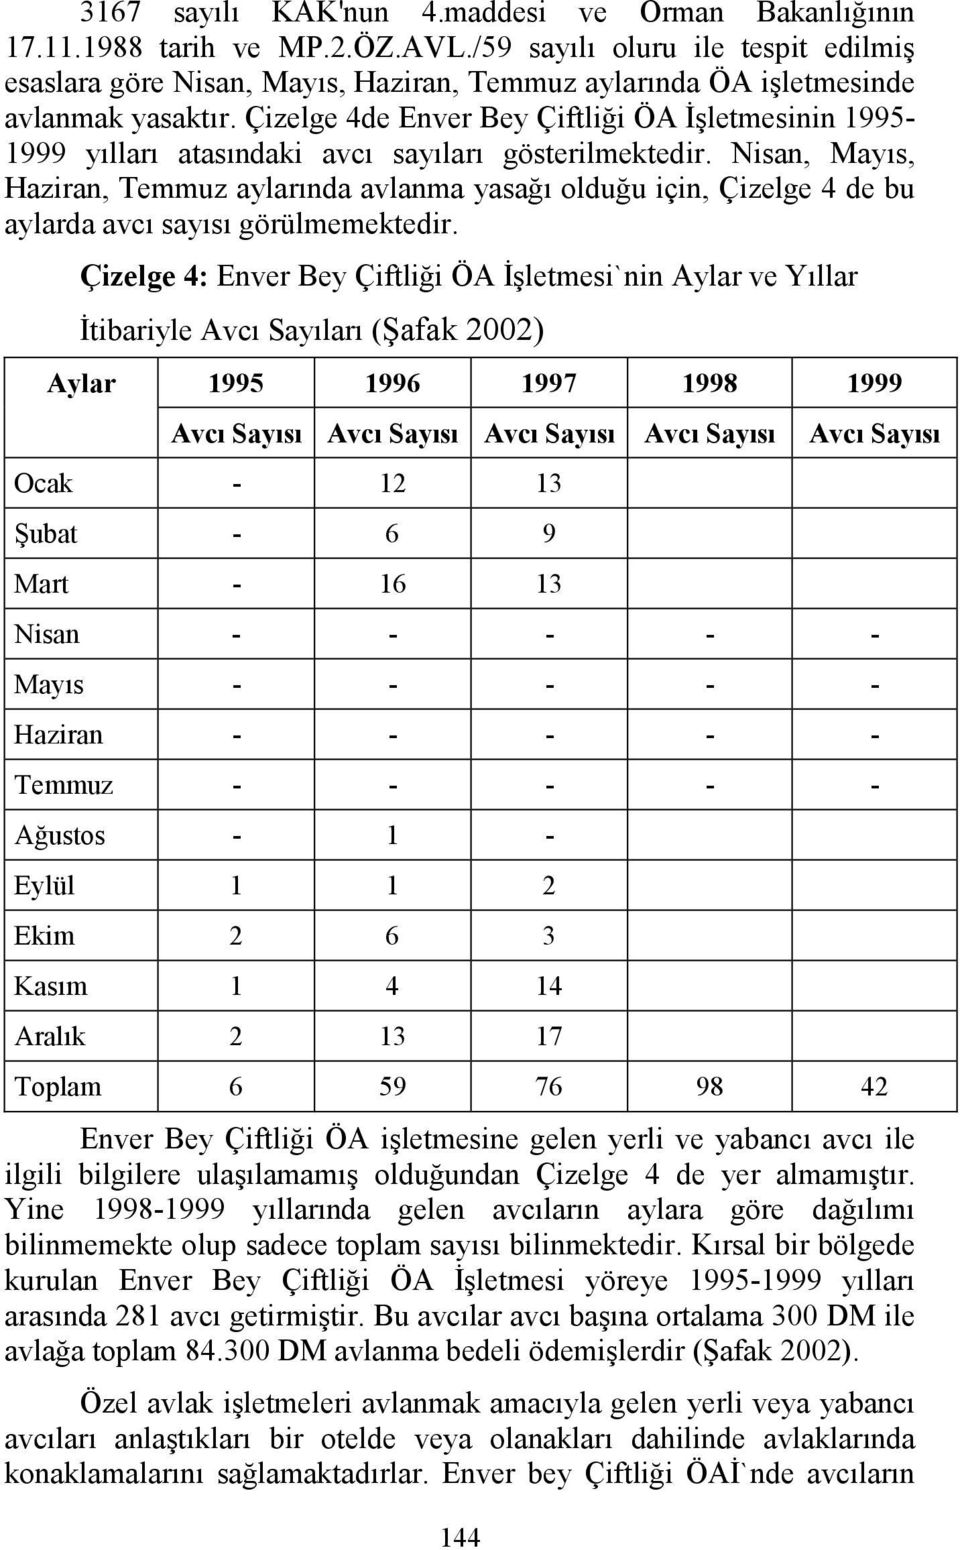 Çizelge 4de Enver Bey Çiftliği ÖA İşletmesinin 1995-1999 yılları atasındaki avcı sayıları gösterilmektedir.